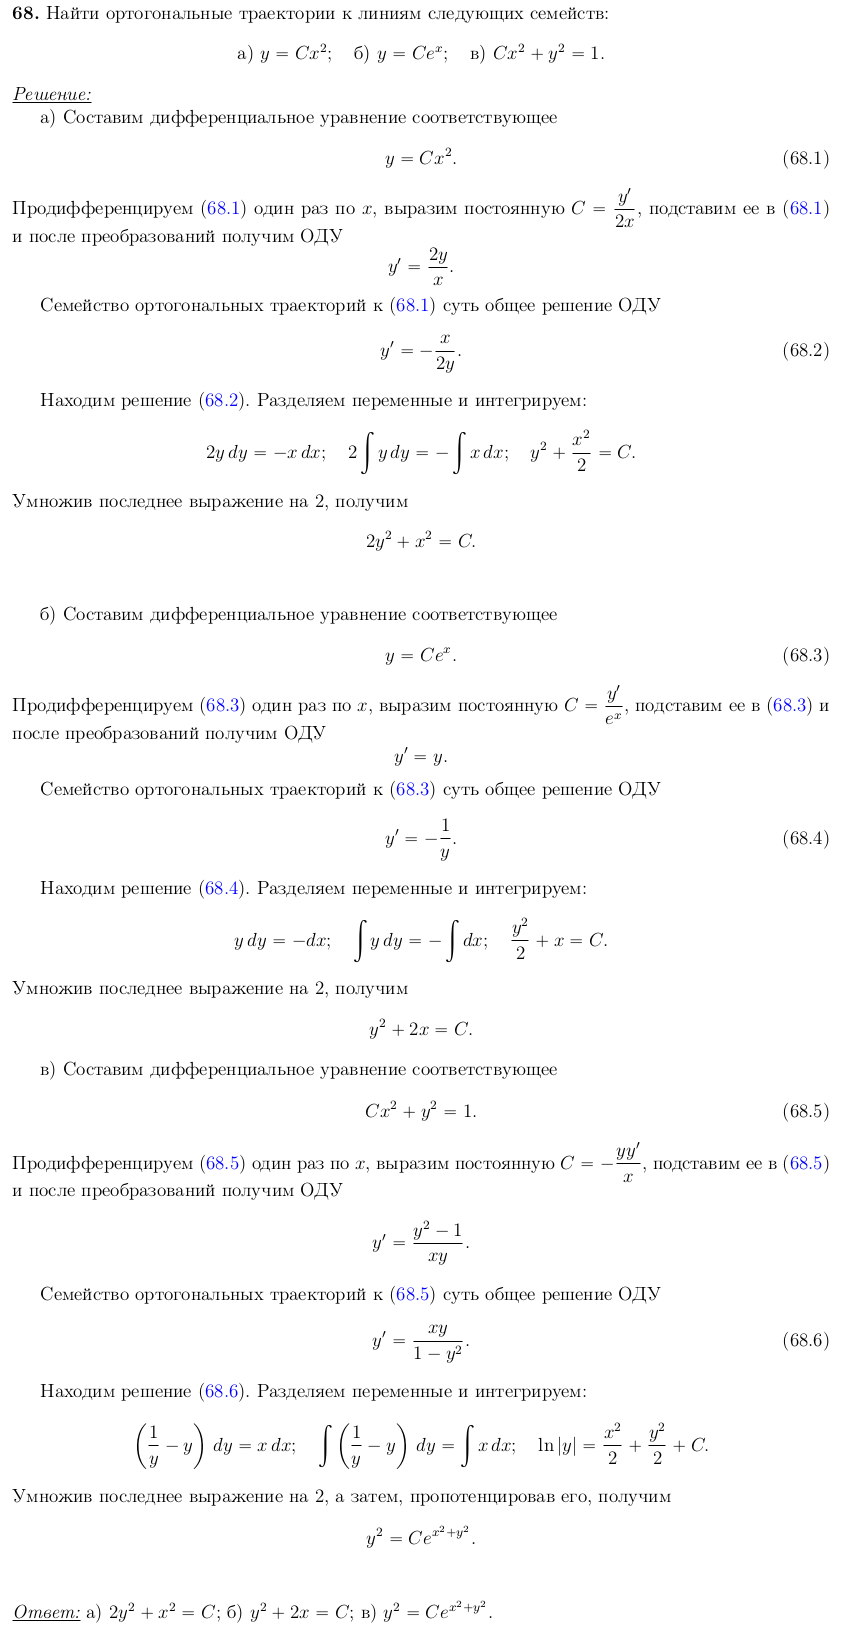 Уравнения с разделяющимися переменными - решение задачи 68